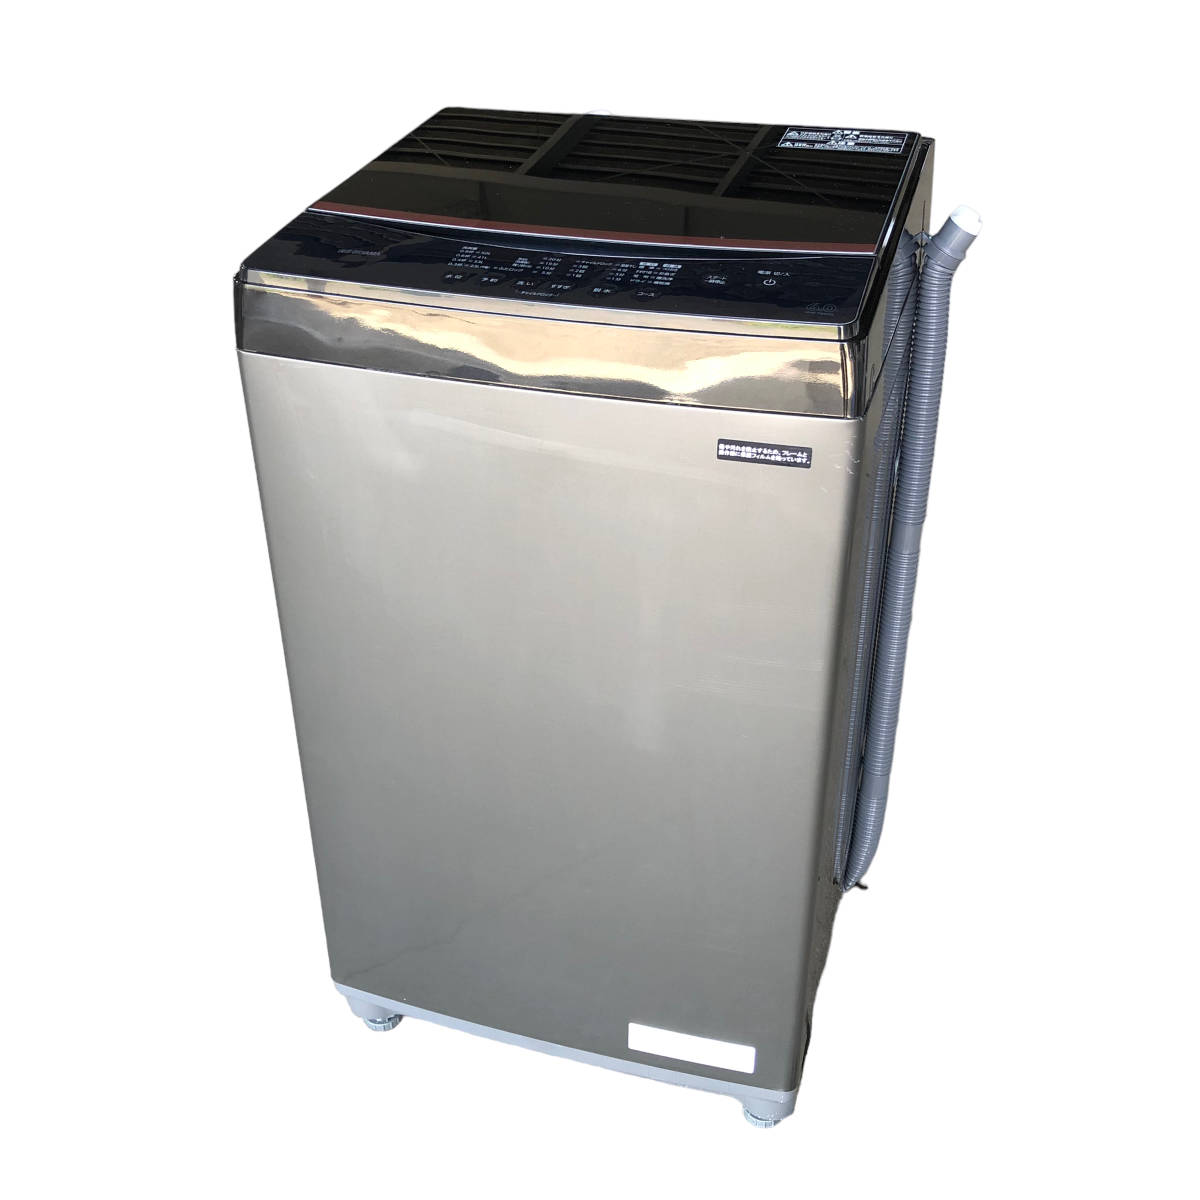 税込) A907 高年式 石狩市 直接引取可 IAW-T605BL 6.0kg 全自動洗濯機